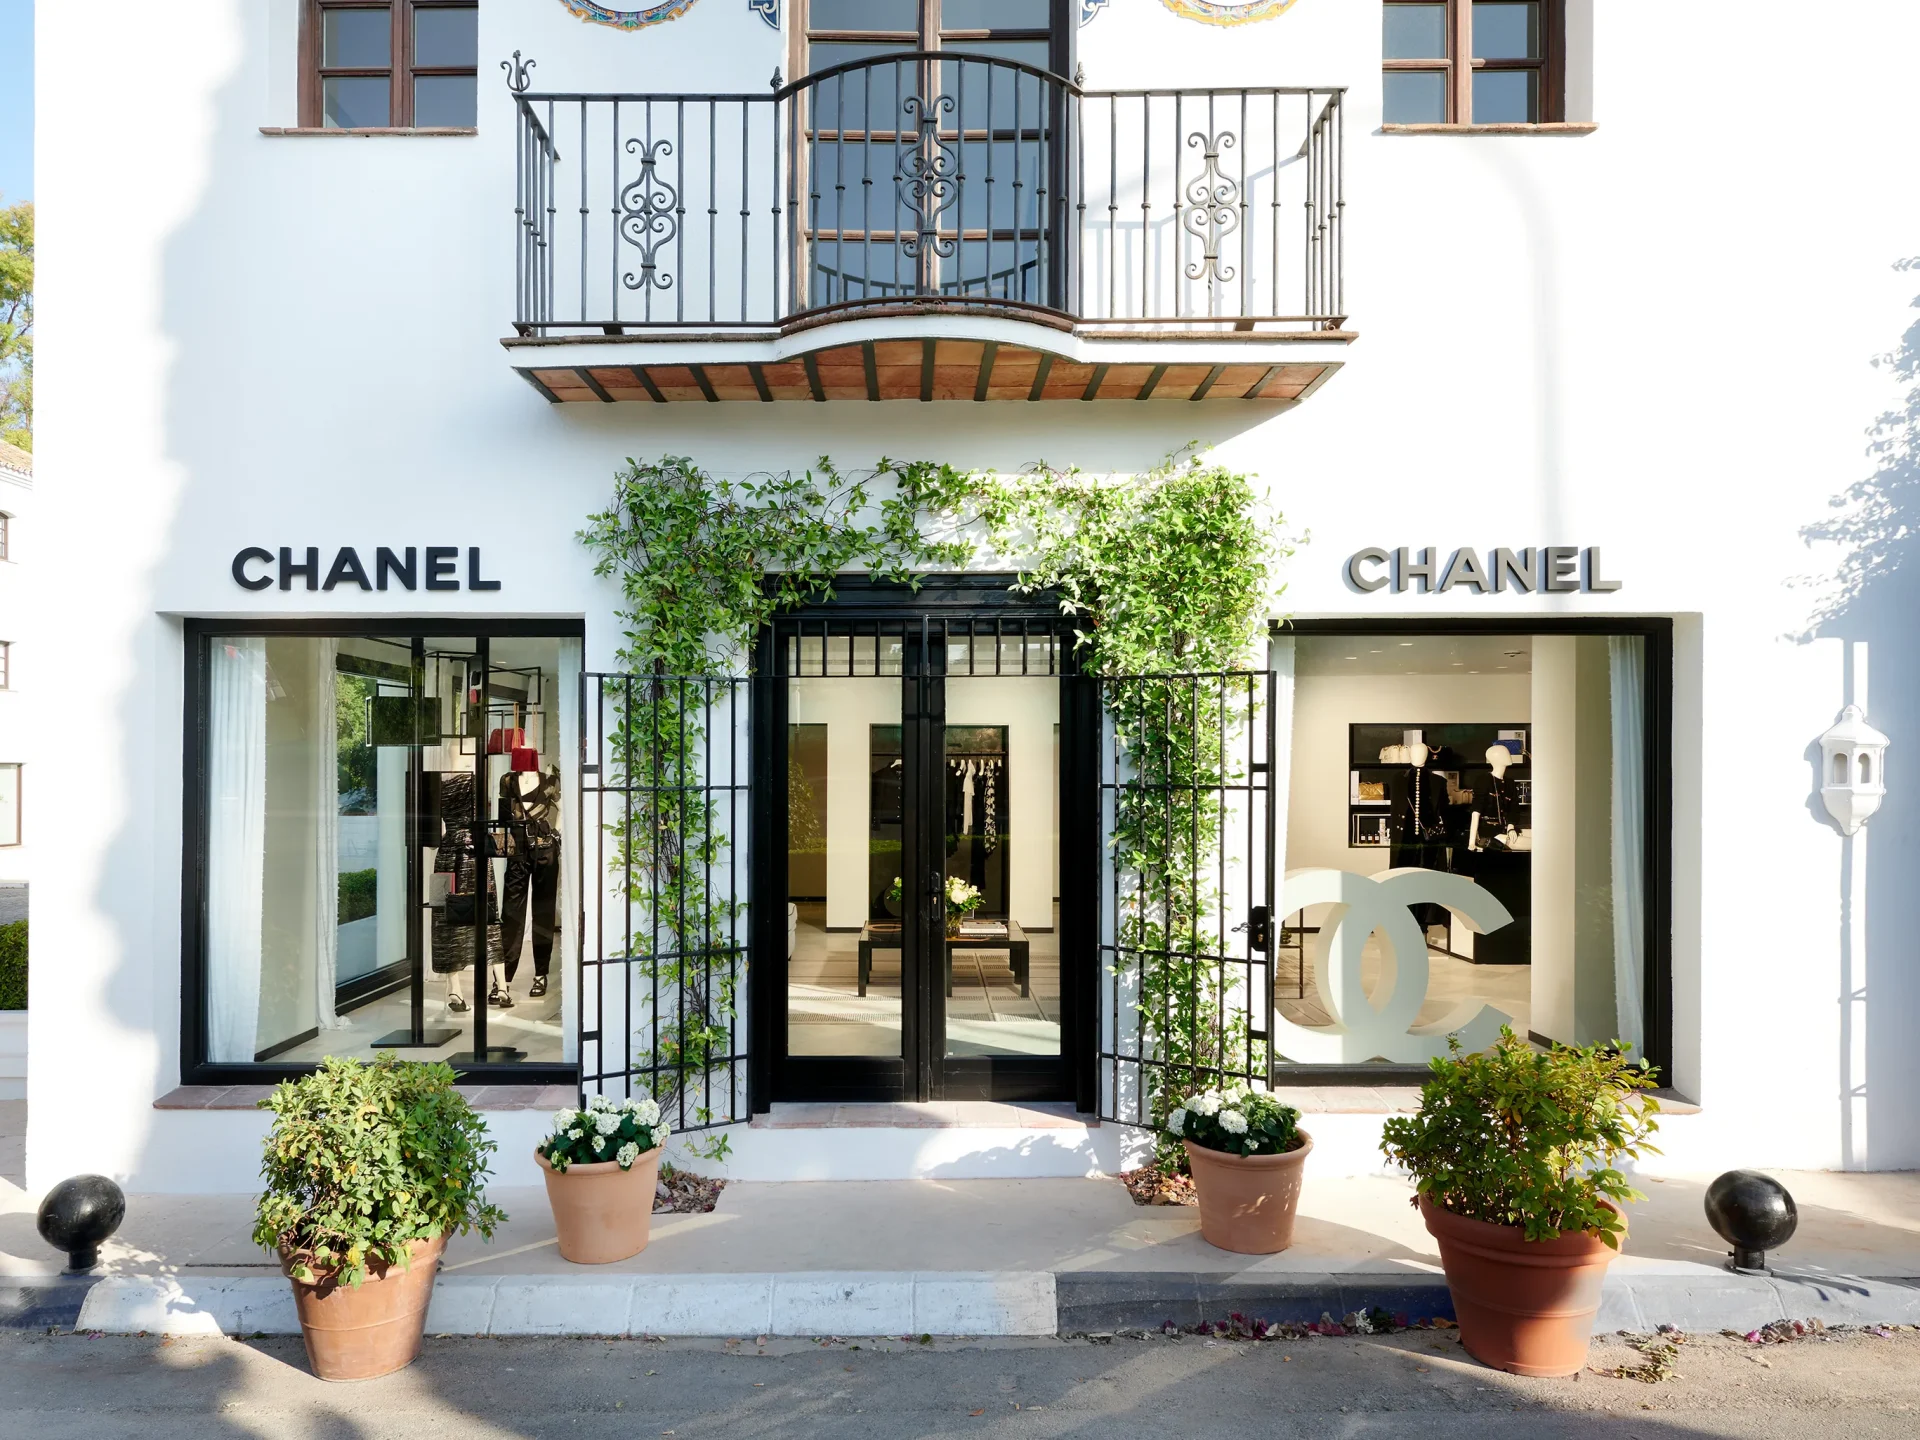 Chanel pop-up boutique, Cannes